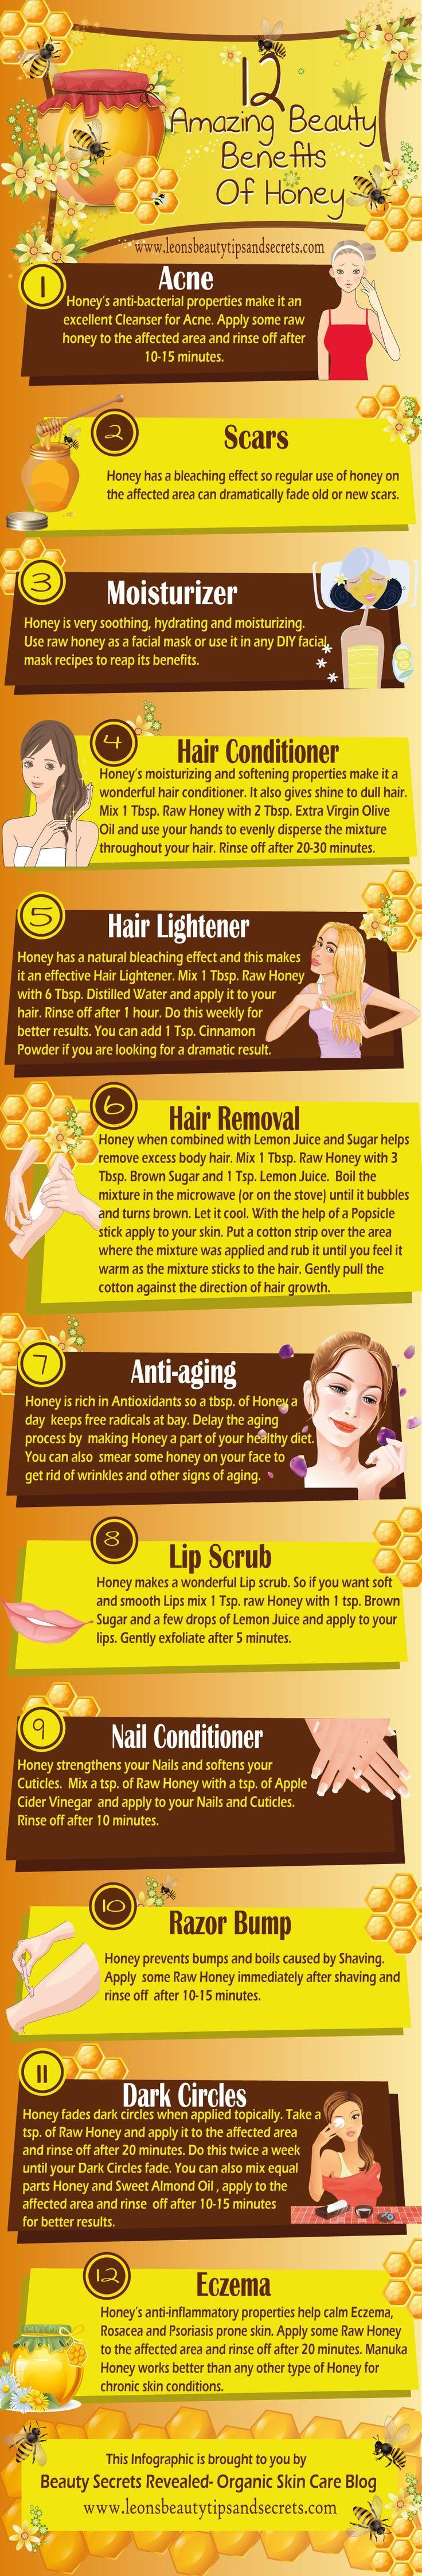 Wedding - 12 Amazing Beauty Benefits Of Honey